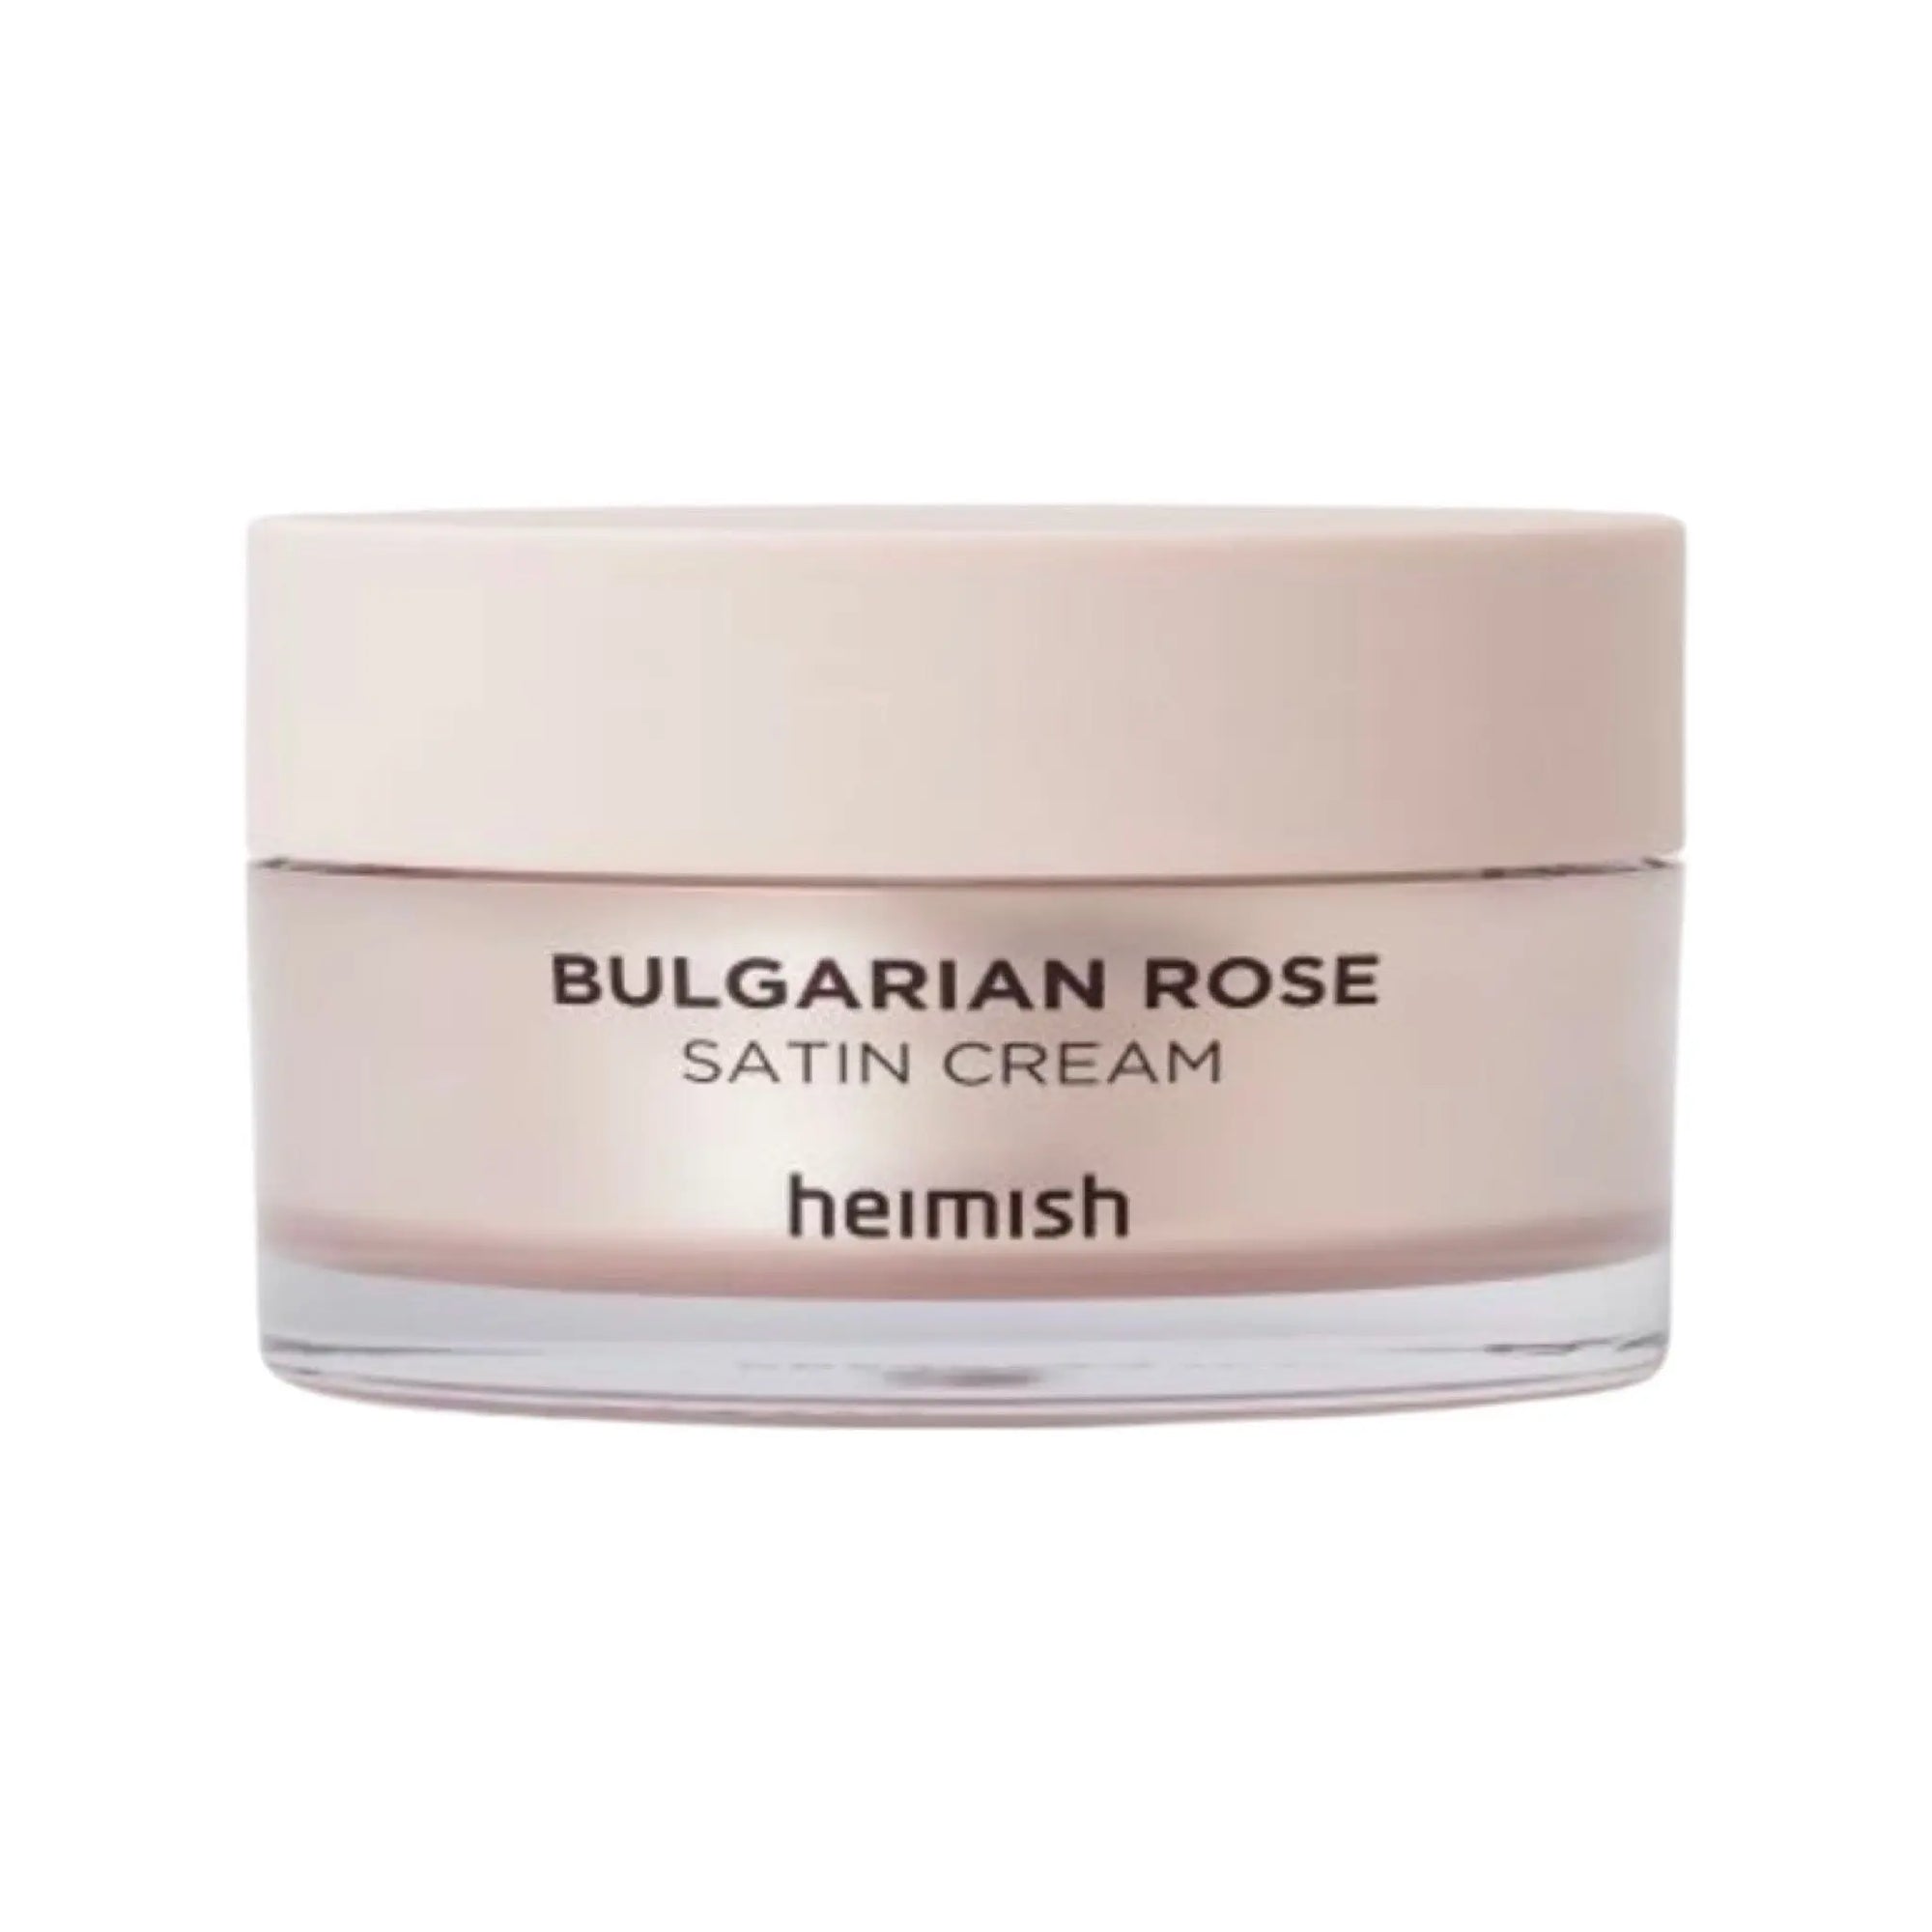 Heimish - Bulgarian Rose Satin Cream 55mL Heimish